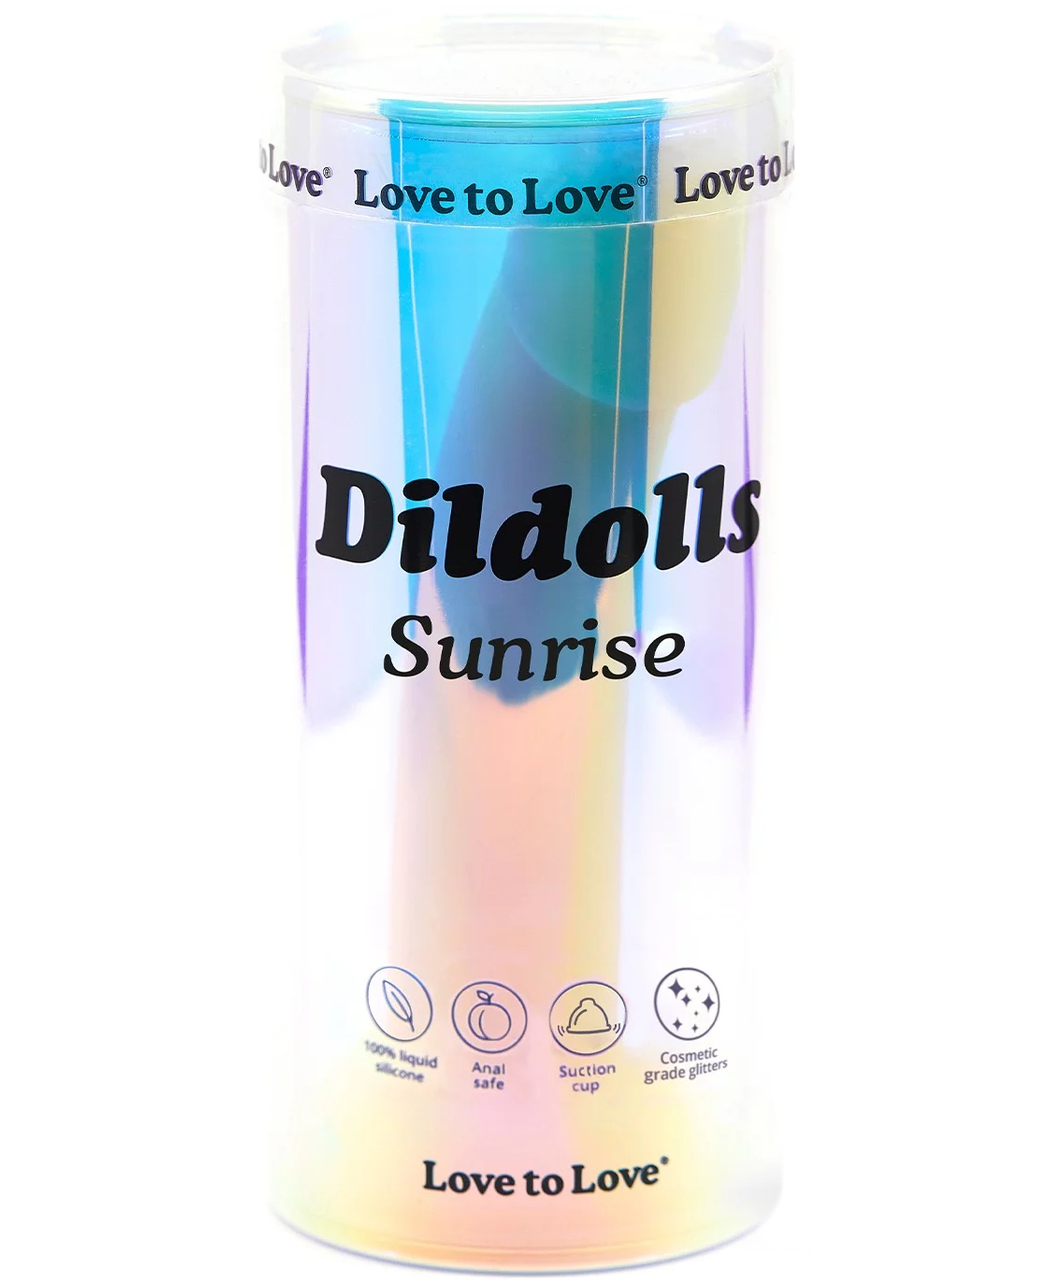 Love to Love Sunrise silicone dildo